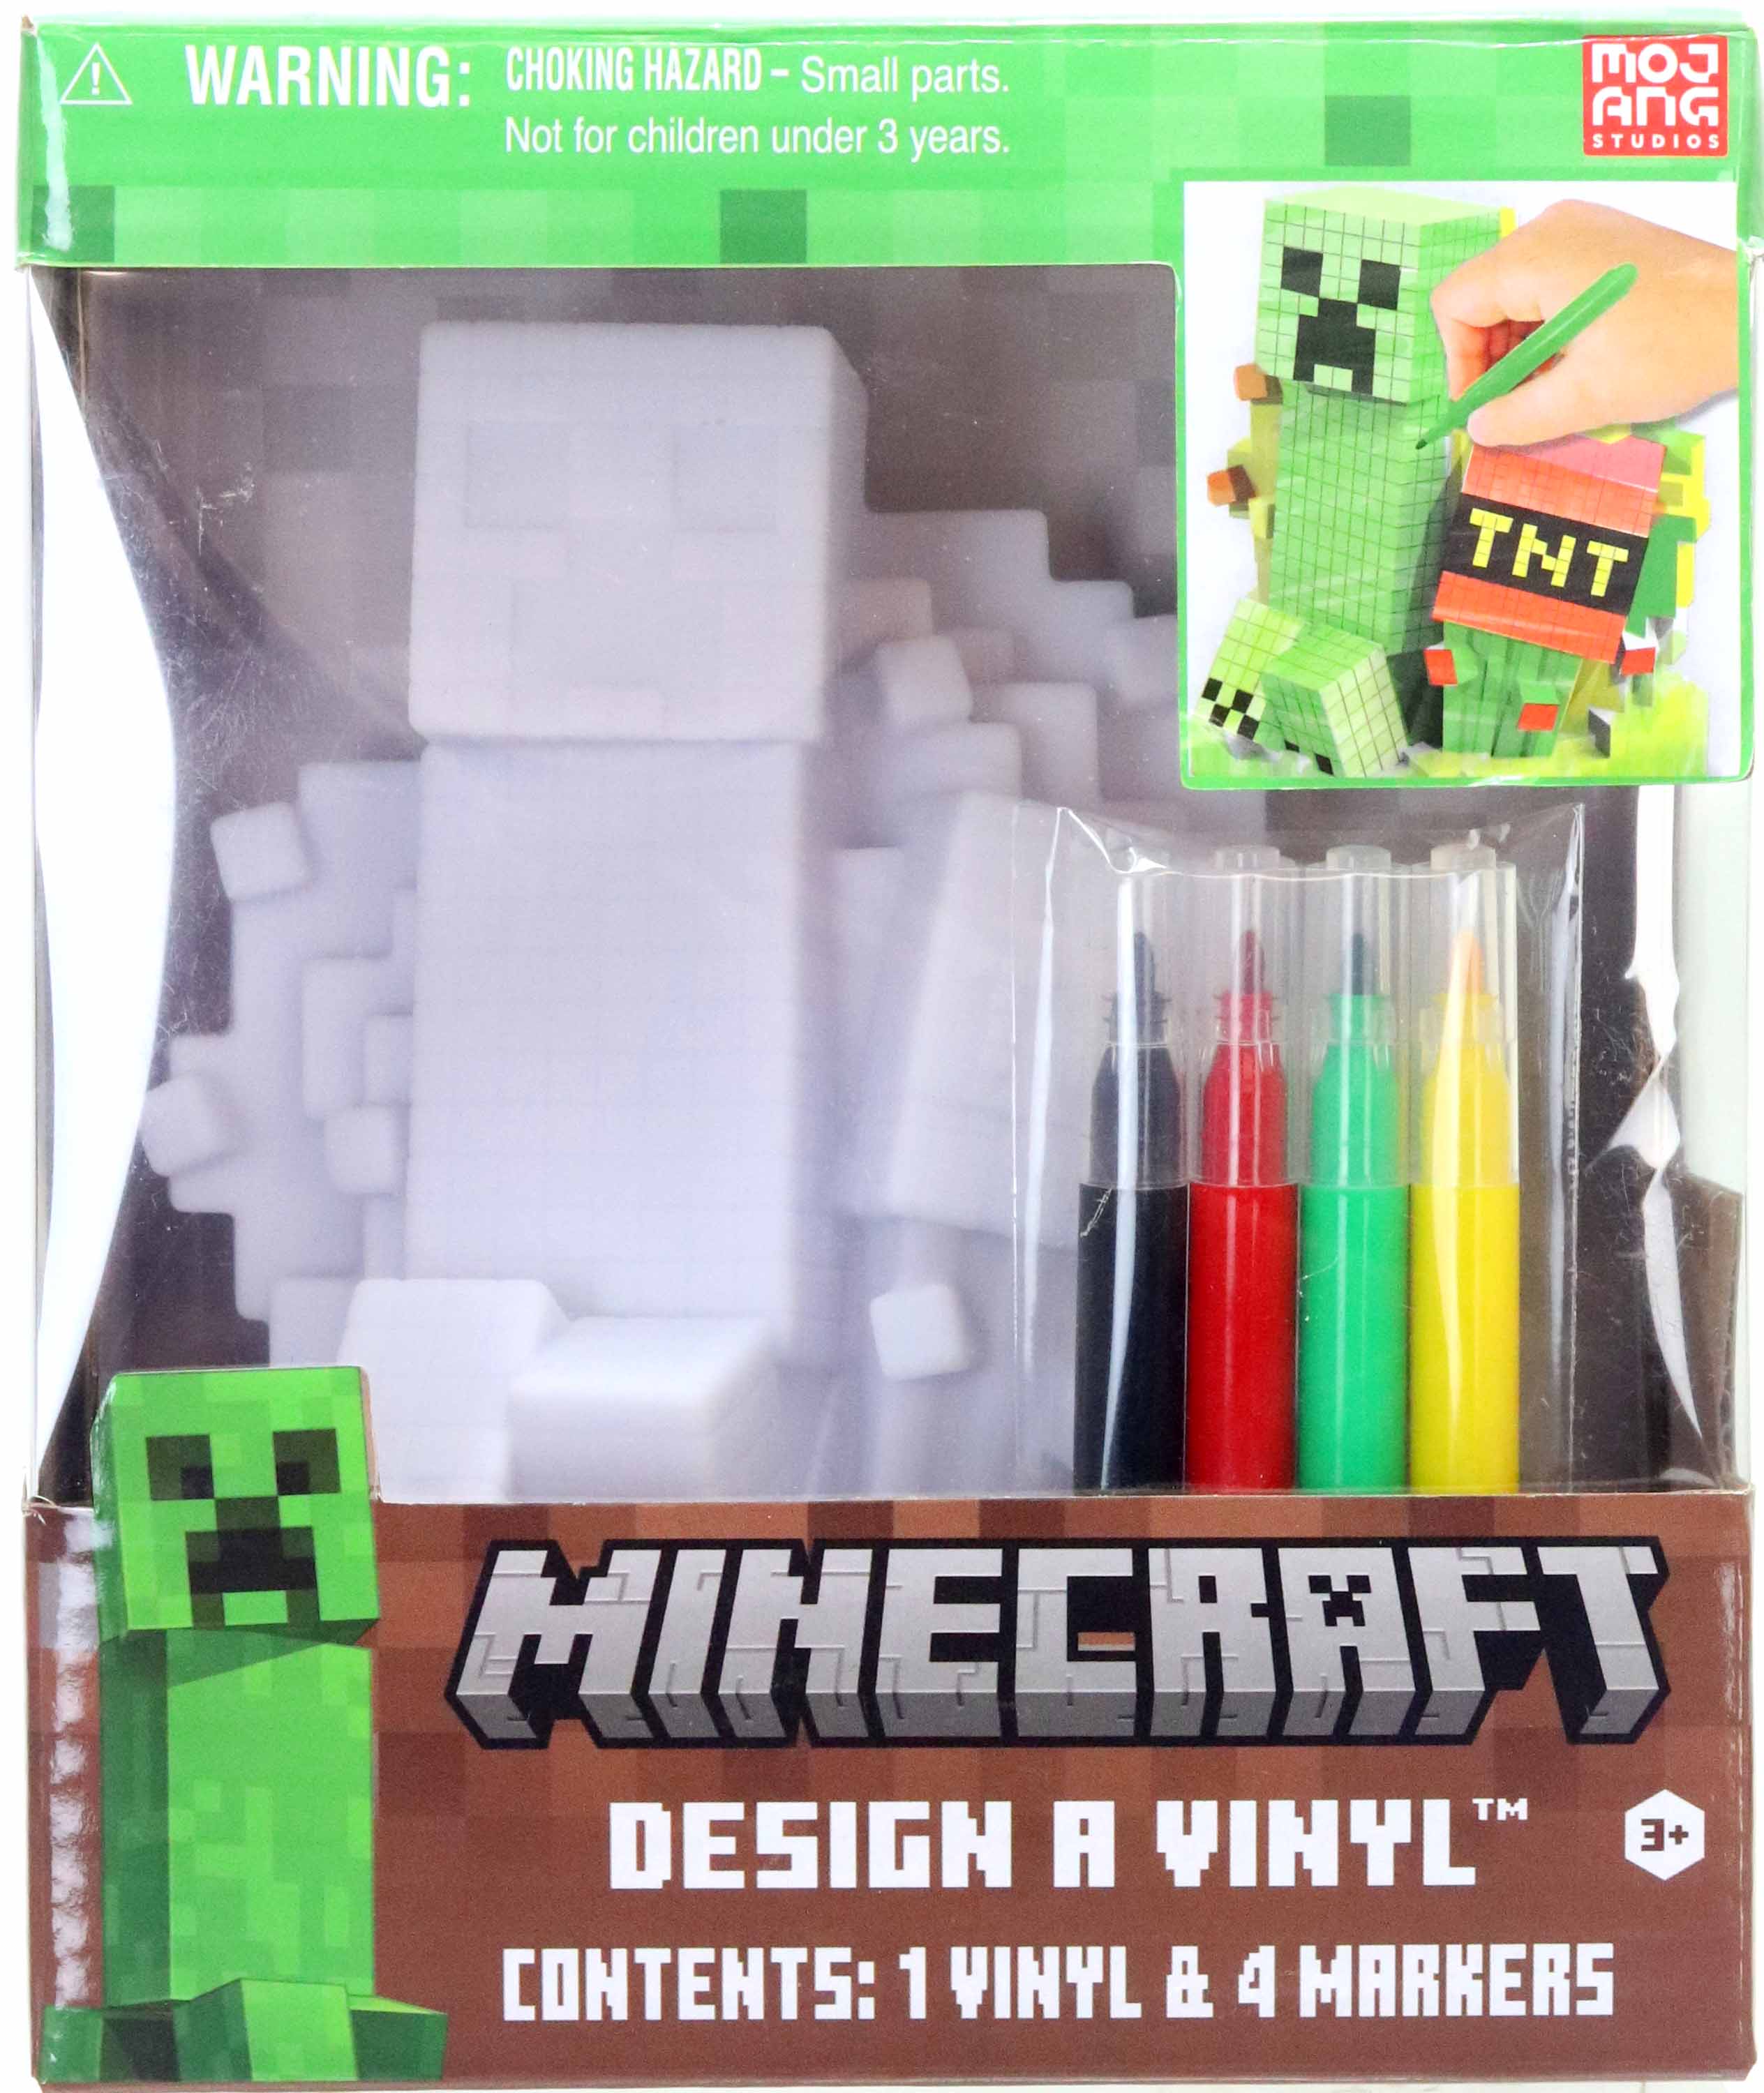 Design Your Own Stitch or Minecraft Vinyl Craft - July 30